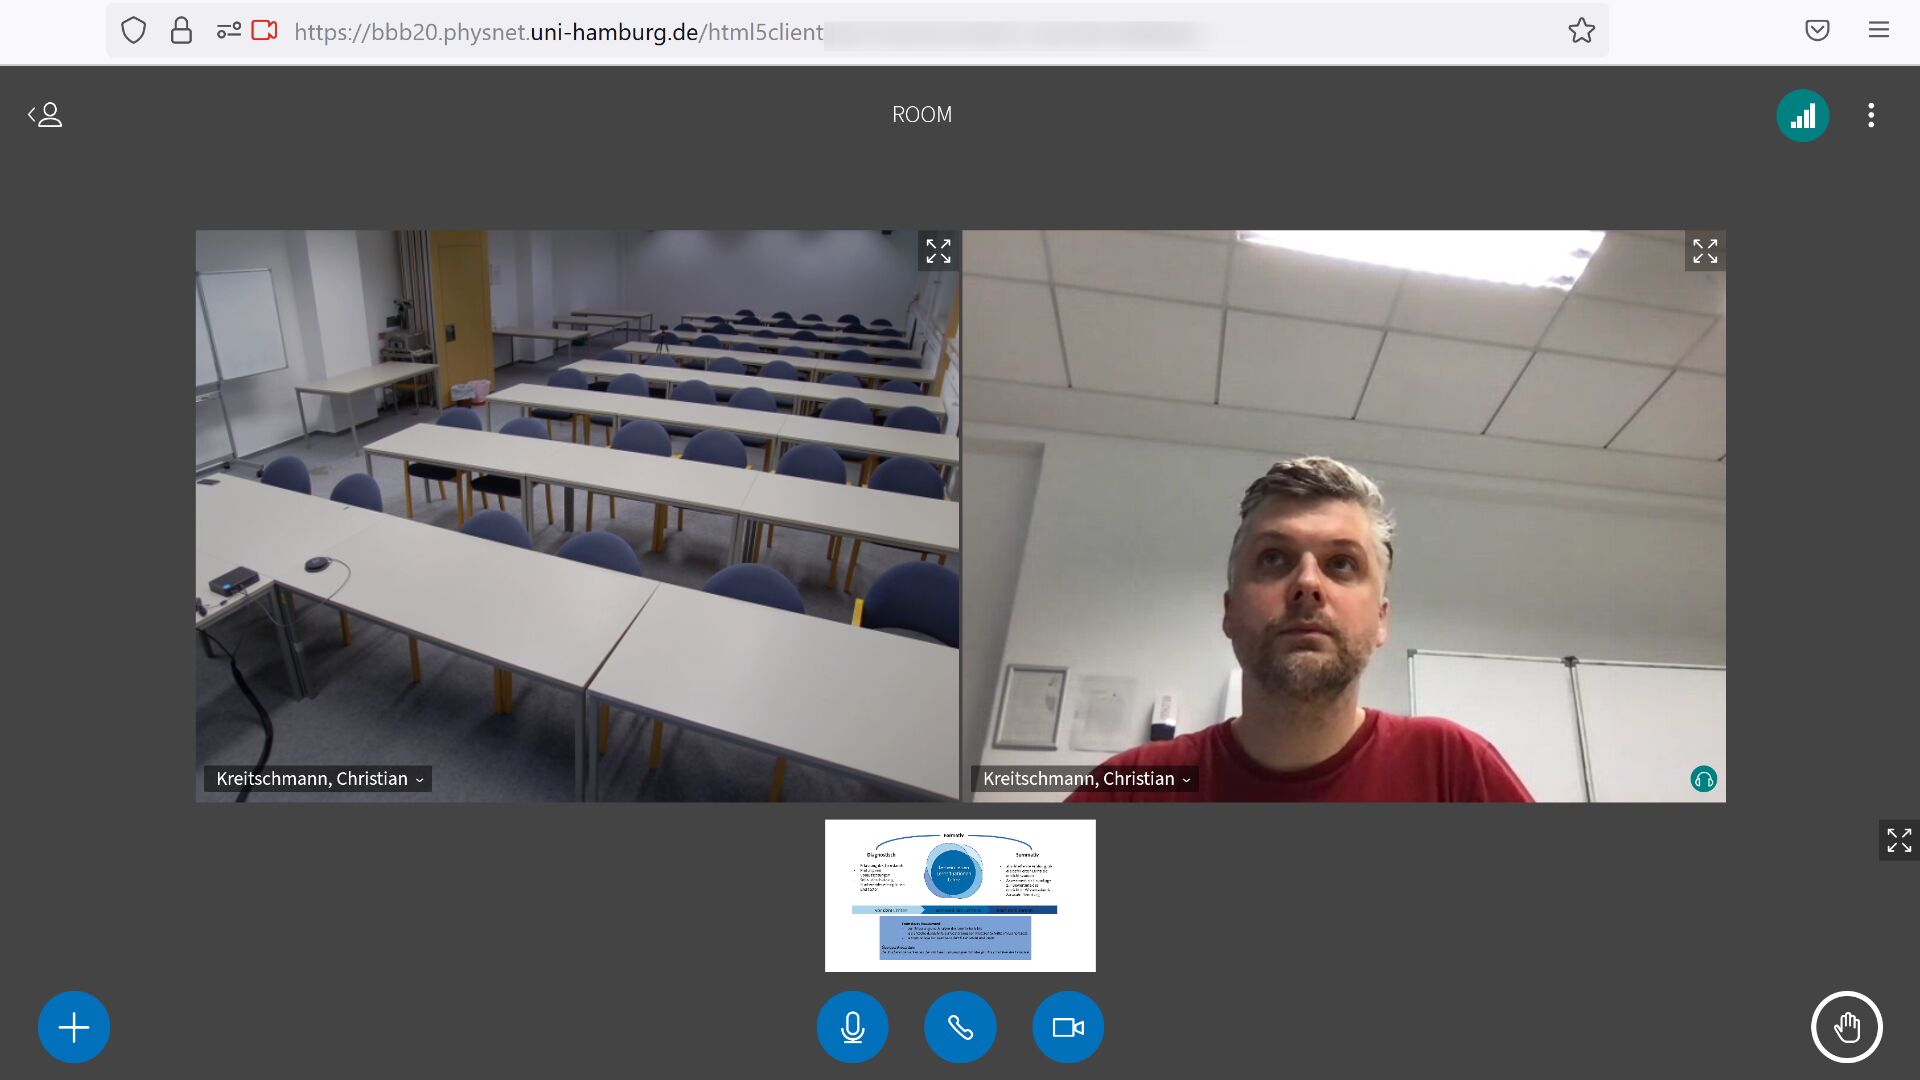 Screenshot eines Webmeetings: Zwei Webcam-Videobilder sind nebeneinander groß sichtbar, eines zeigt den Raum, das andere eine Person. Darunter wird verkleinert eine Präsentation gezeigt.